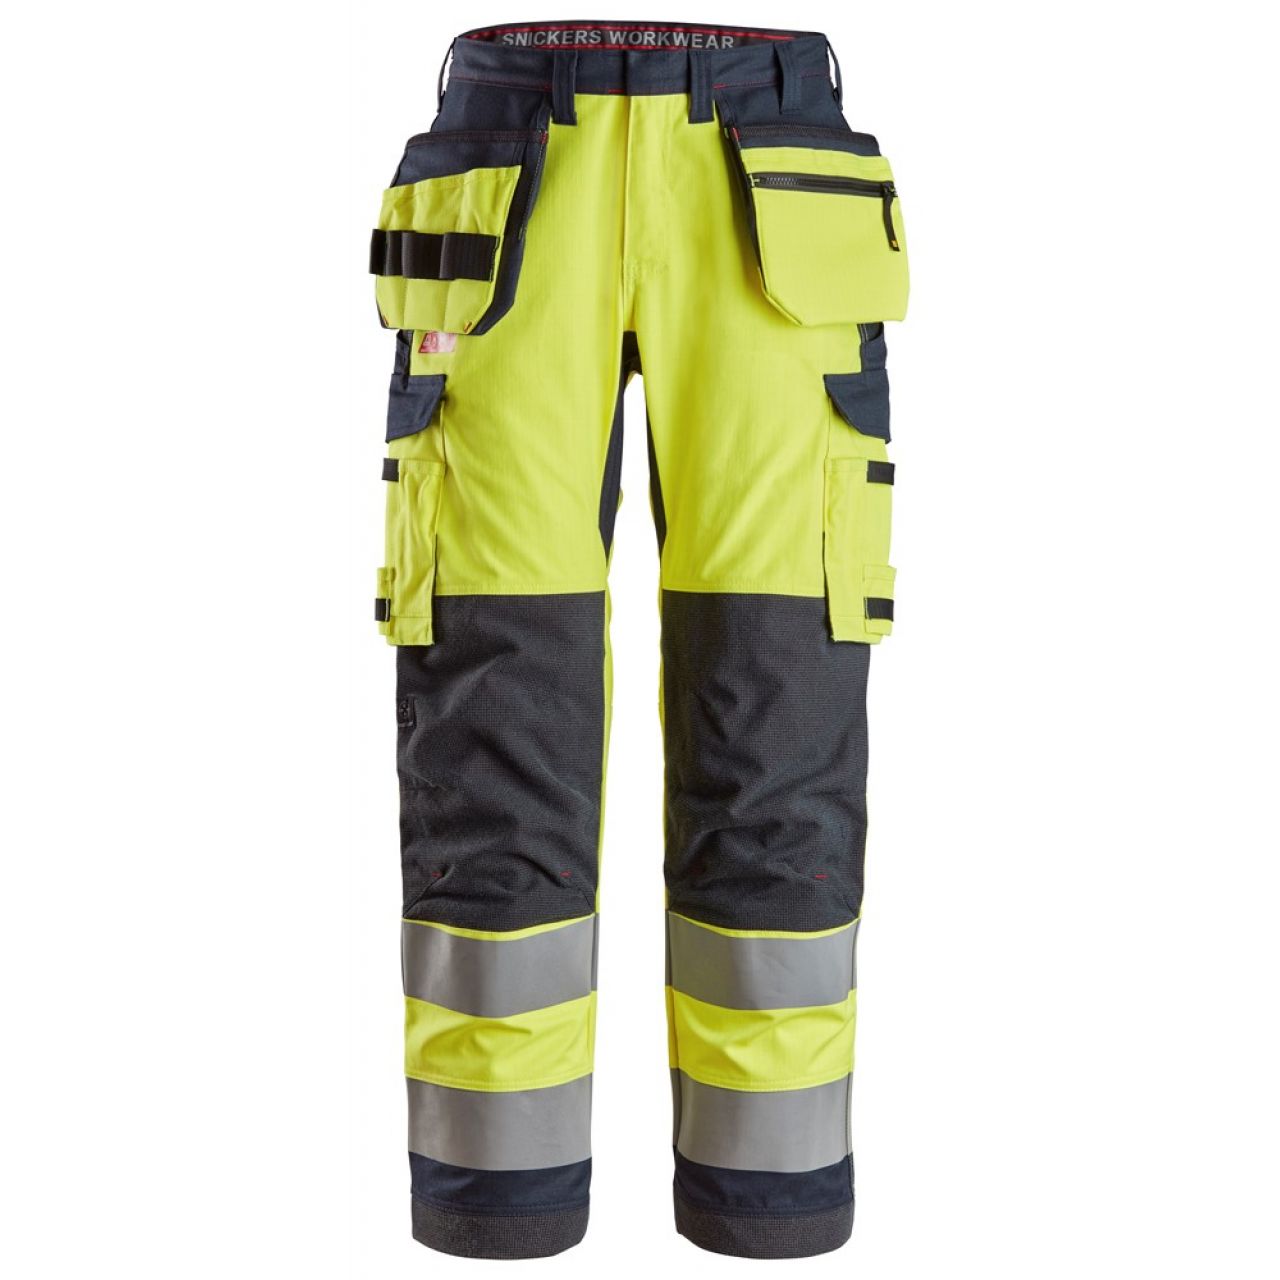 6261 Pantalones largos de trabajo de alta visibilidad clase 2 con bolsillos flotantes simétricos ProtecWork amarillo-azul marino talla 150